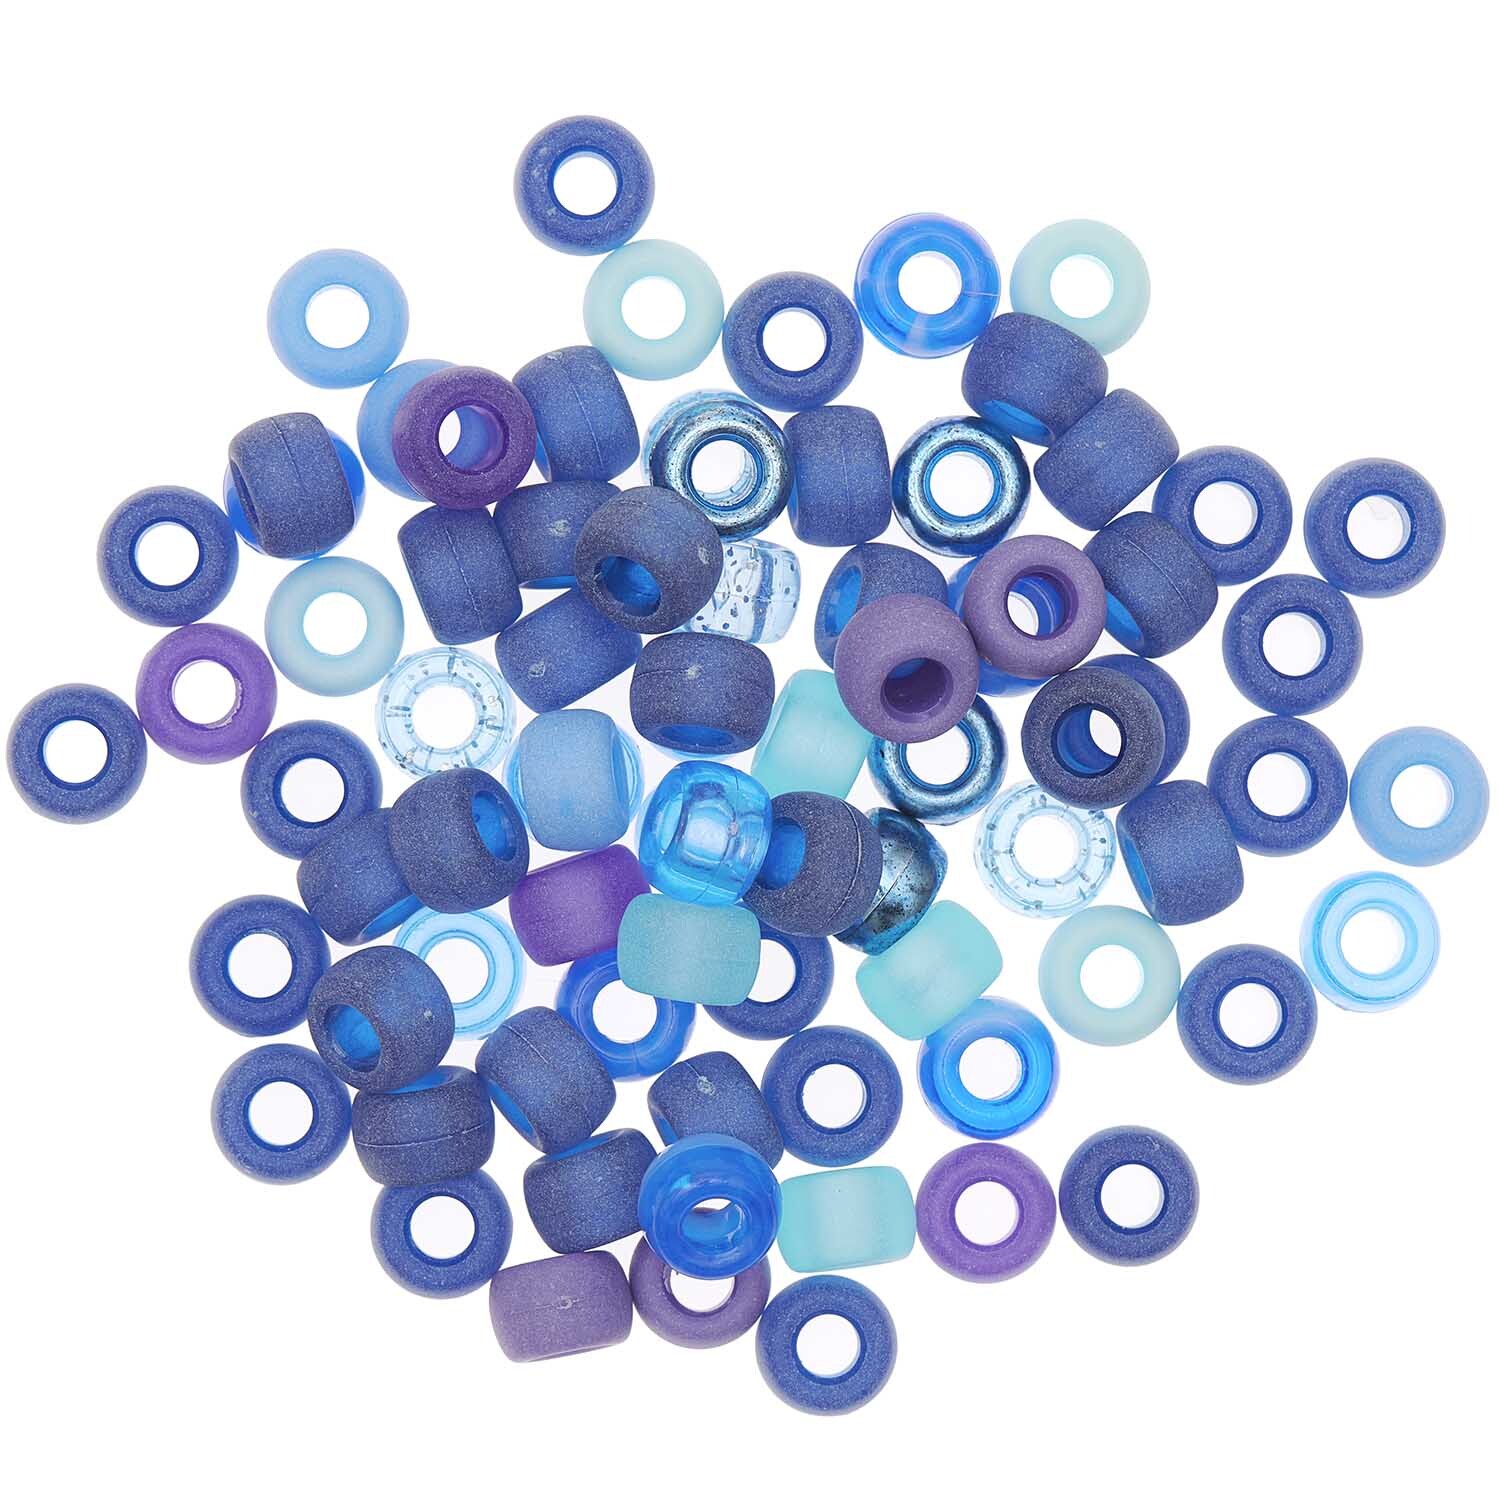 itoshii - Ponii Beads Blau Mix 9x6mm 80 Stück